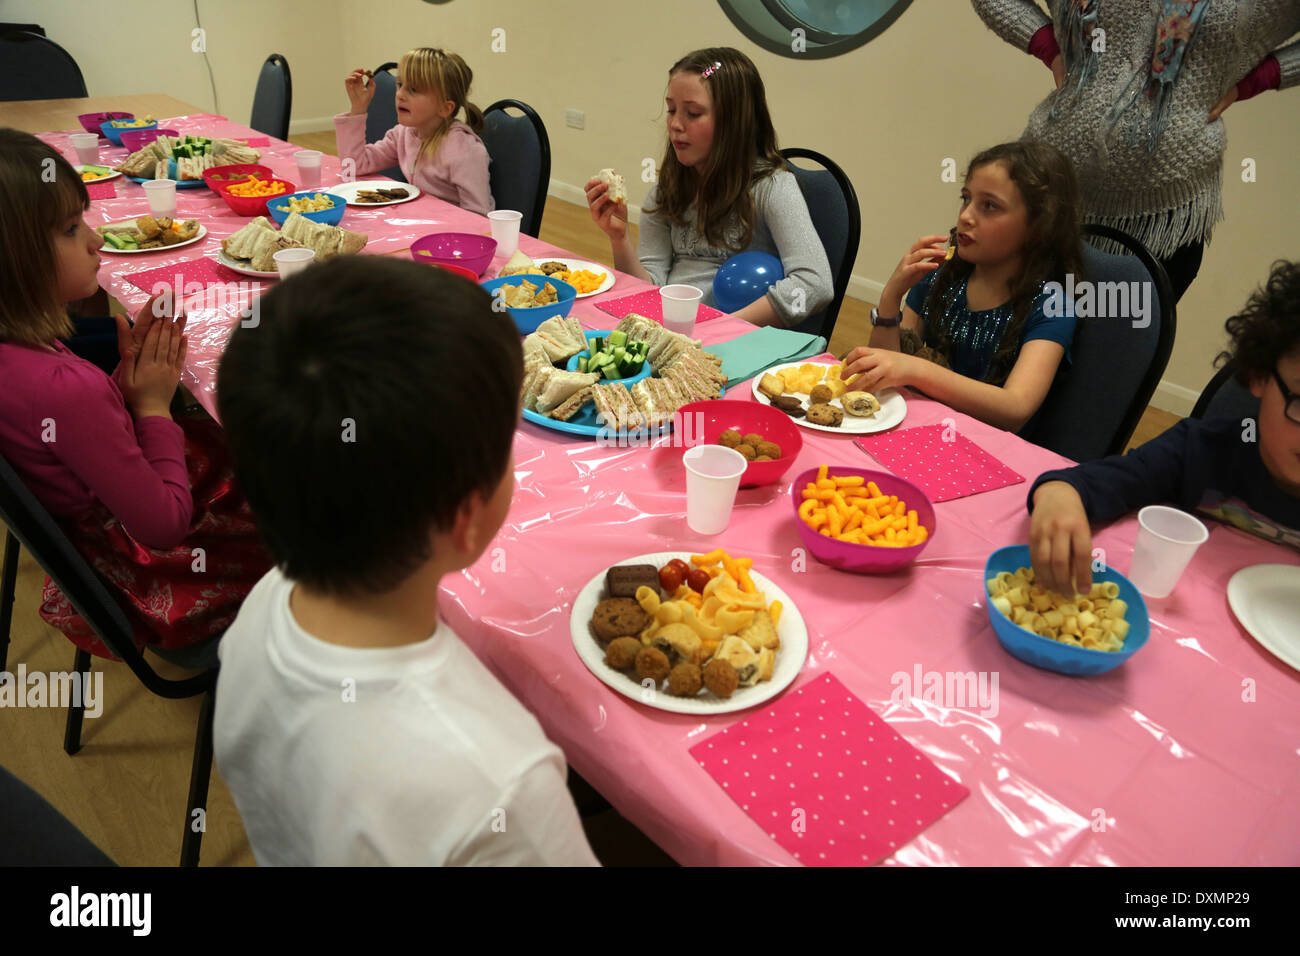 8 Ans Fille D Anniversaire Enfants A La Table De Manger Des Aliments Dorset Angleterre Photo Stock Alamy